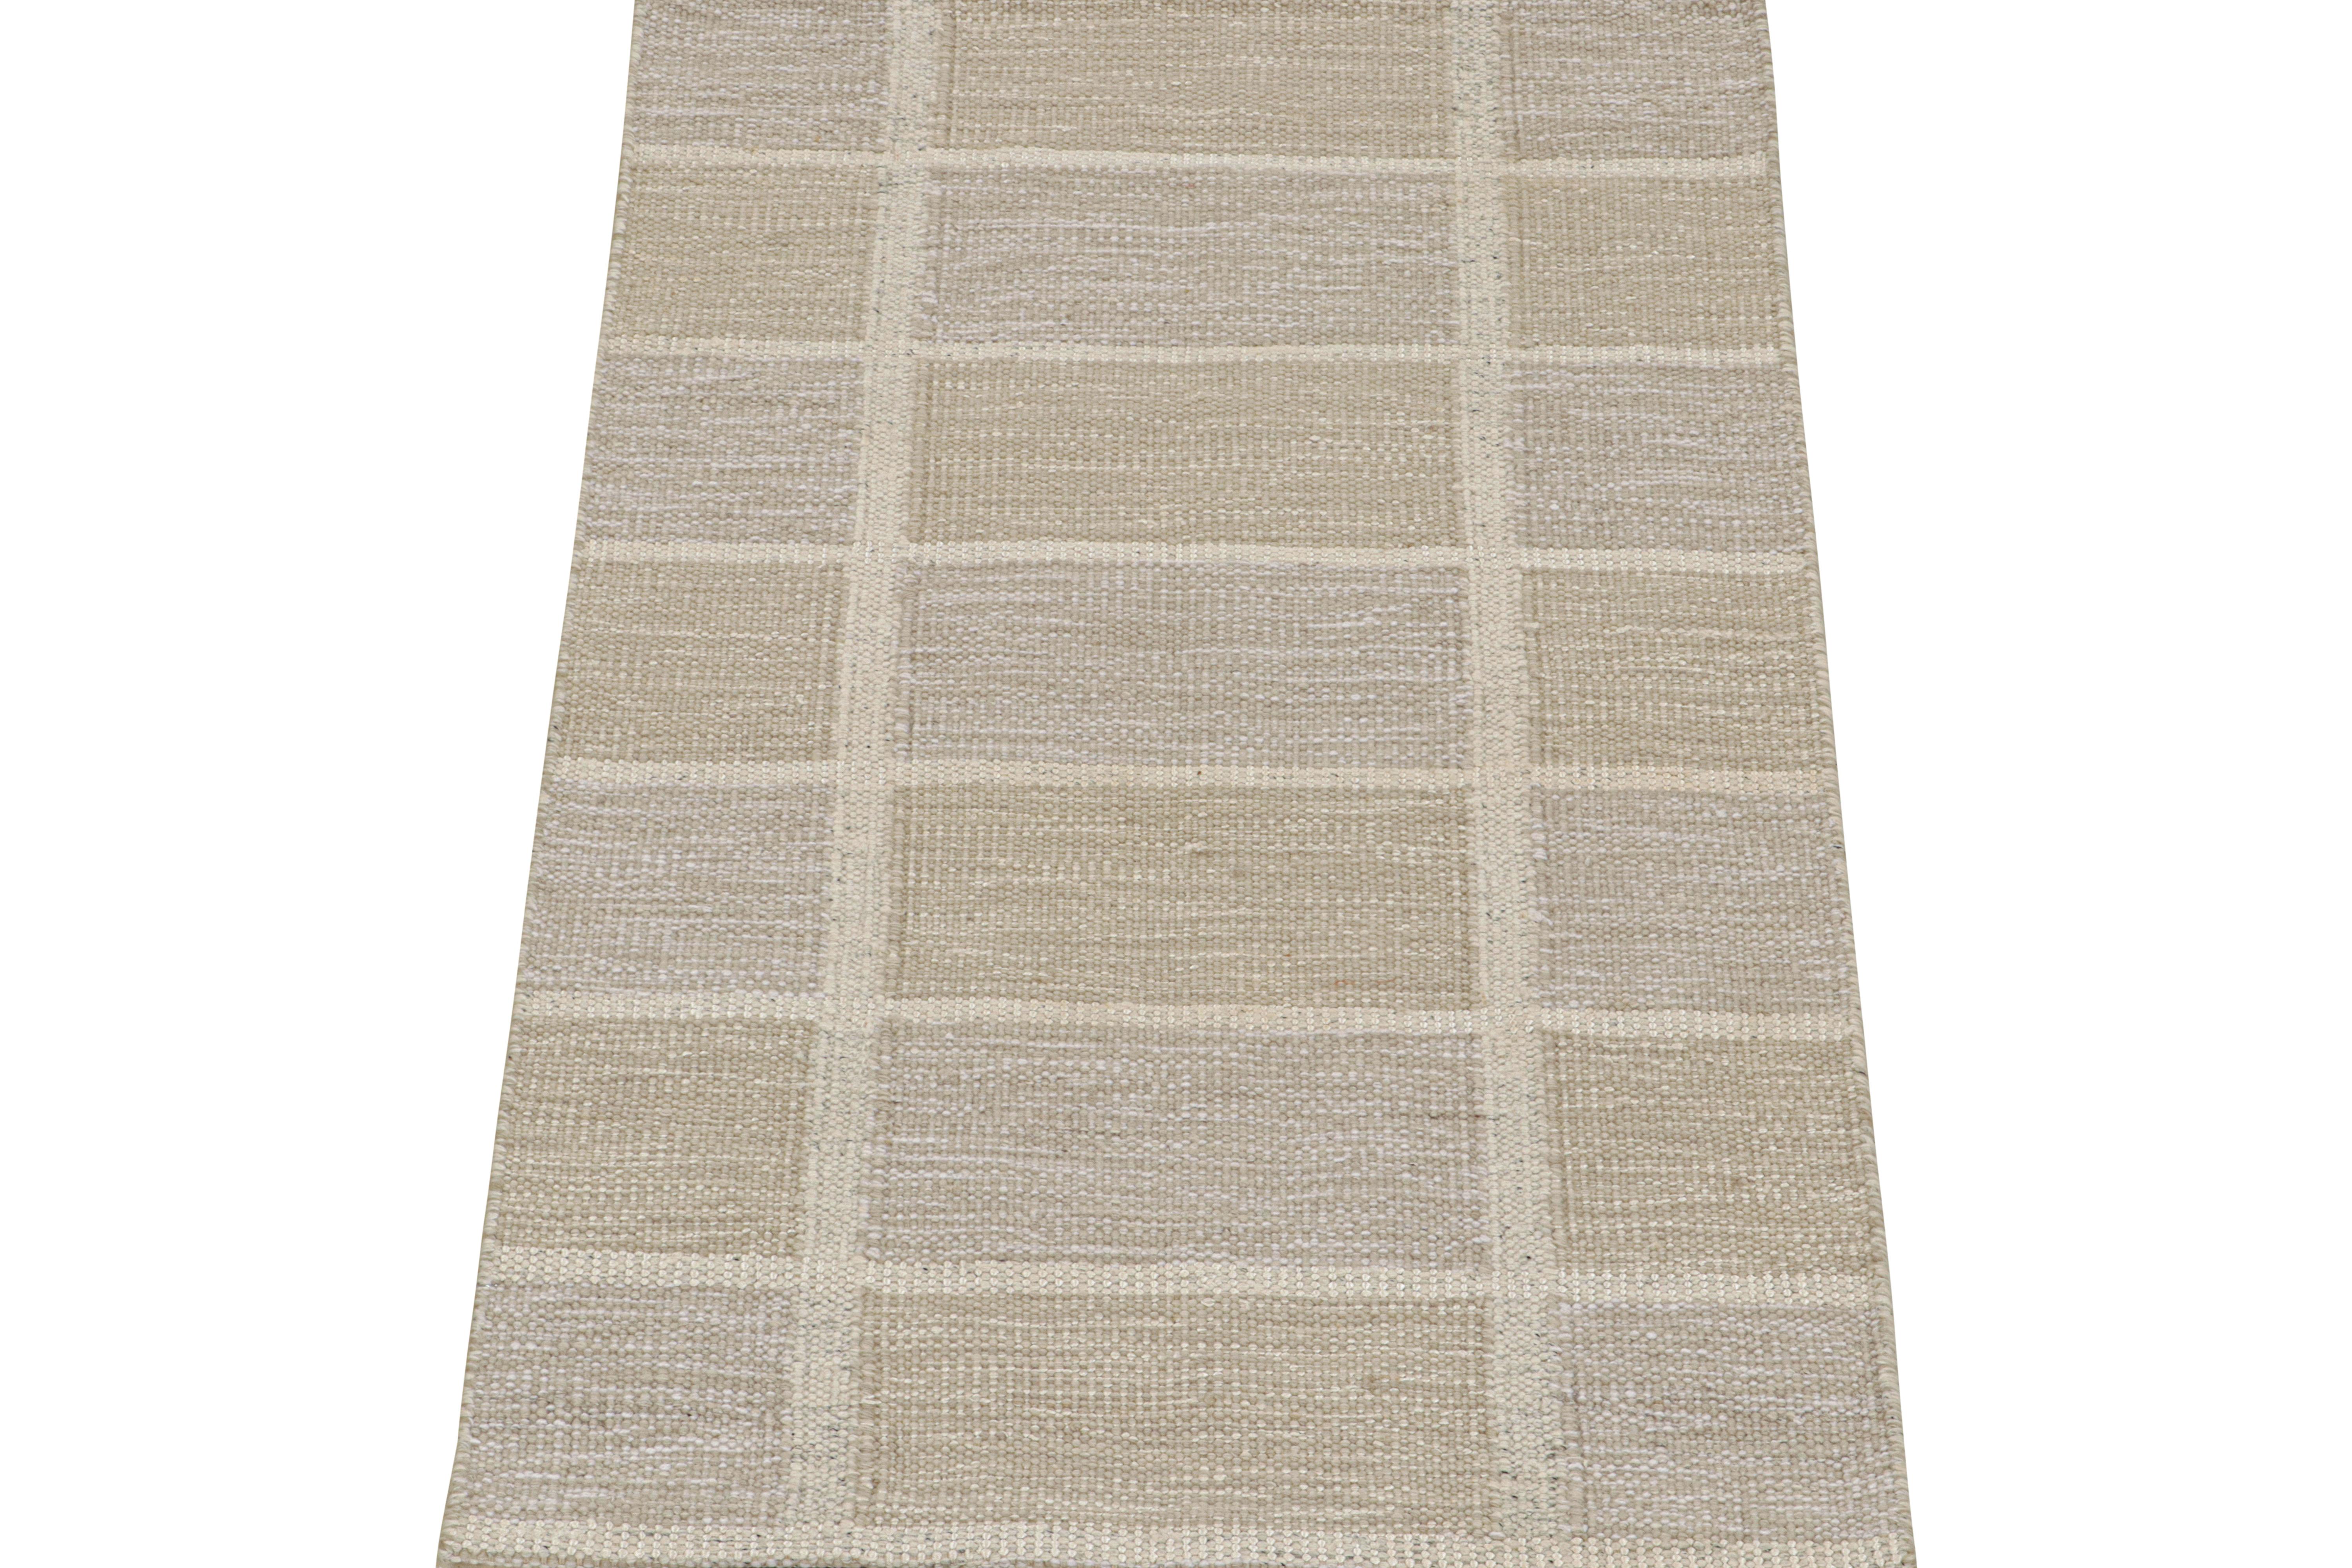 Ce tapis 3x5 à tissage plat est un nouvel ajout audacieux à la Collection Salisbury de Rug & Kilim. Tissé à la main dans une laine robuste semi-vestie, son design reflète une interprétation contemporaine du style Rollakans et Swedish Deco du milieu